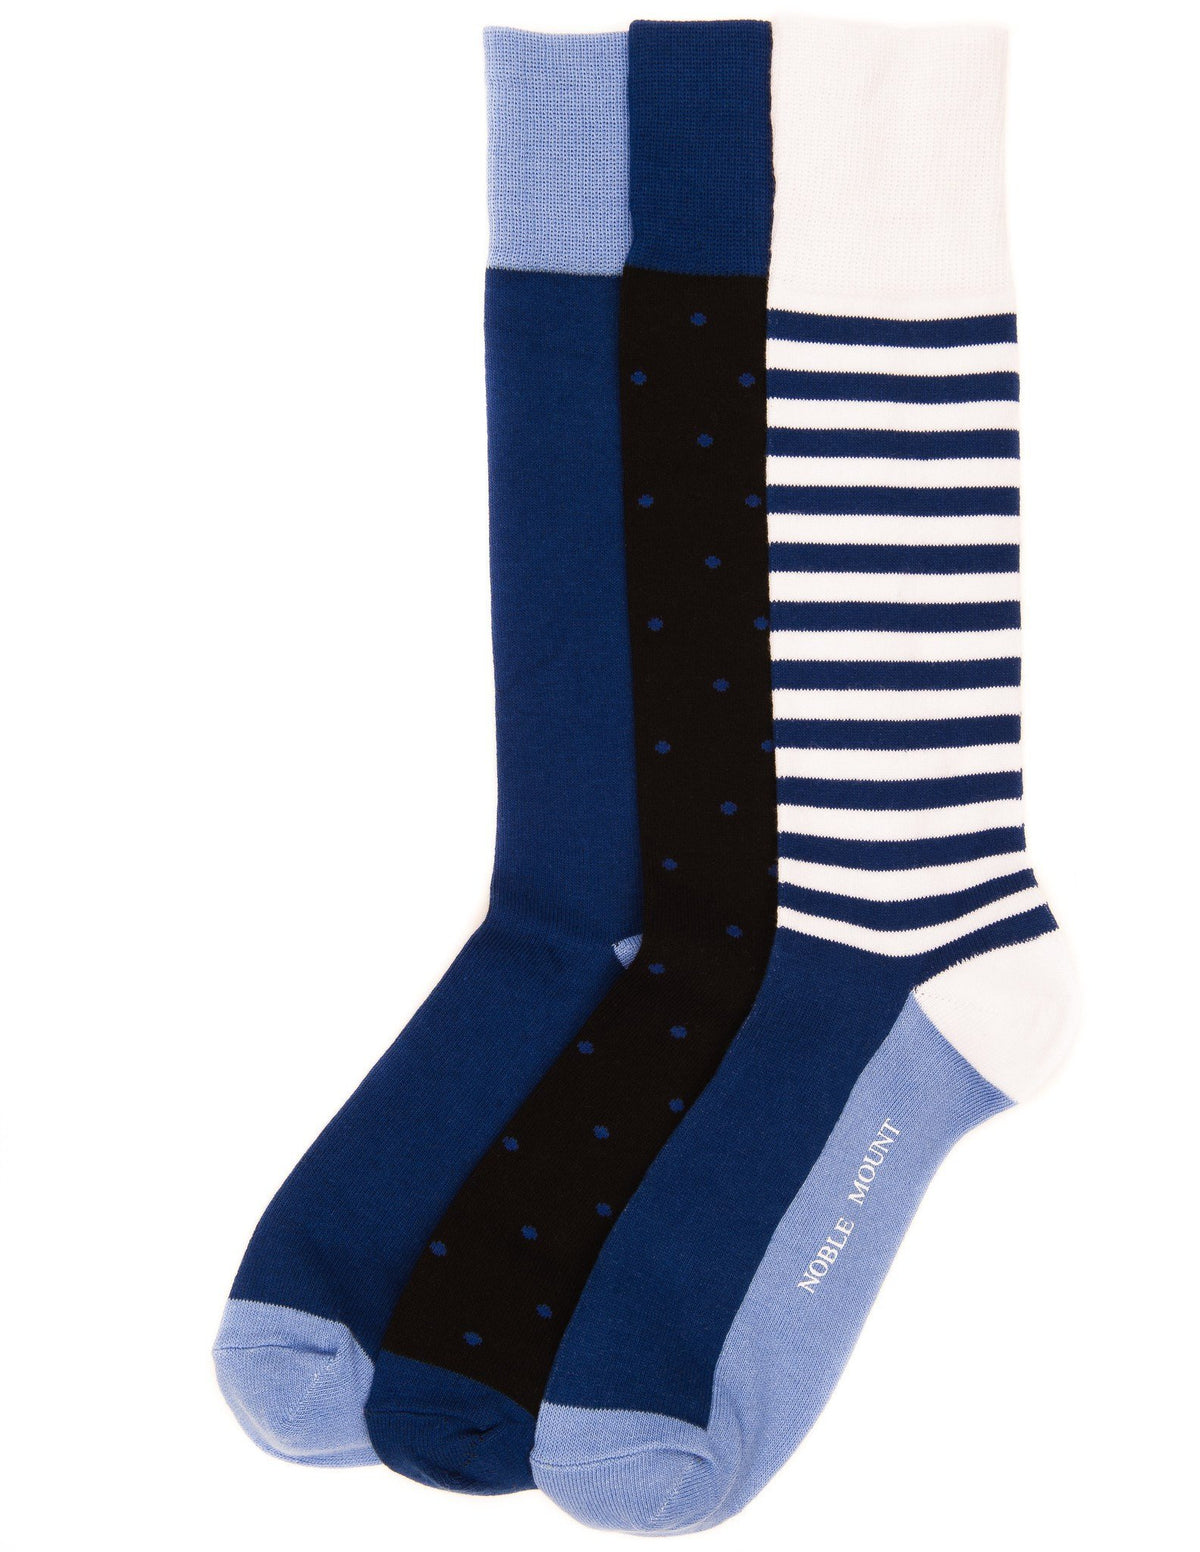 Men's Combed Cotton Dress Socks 3-Pack - Set A9